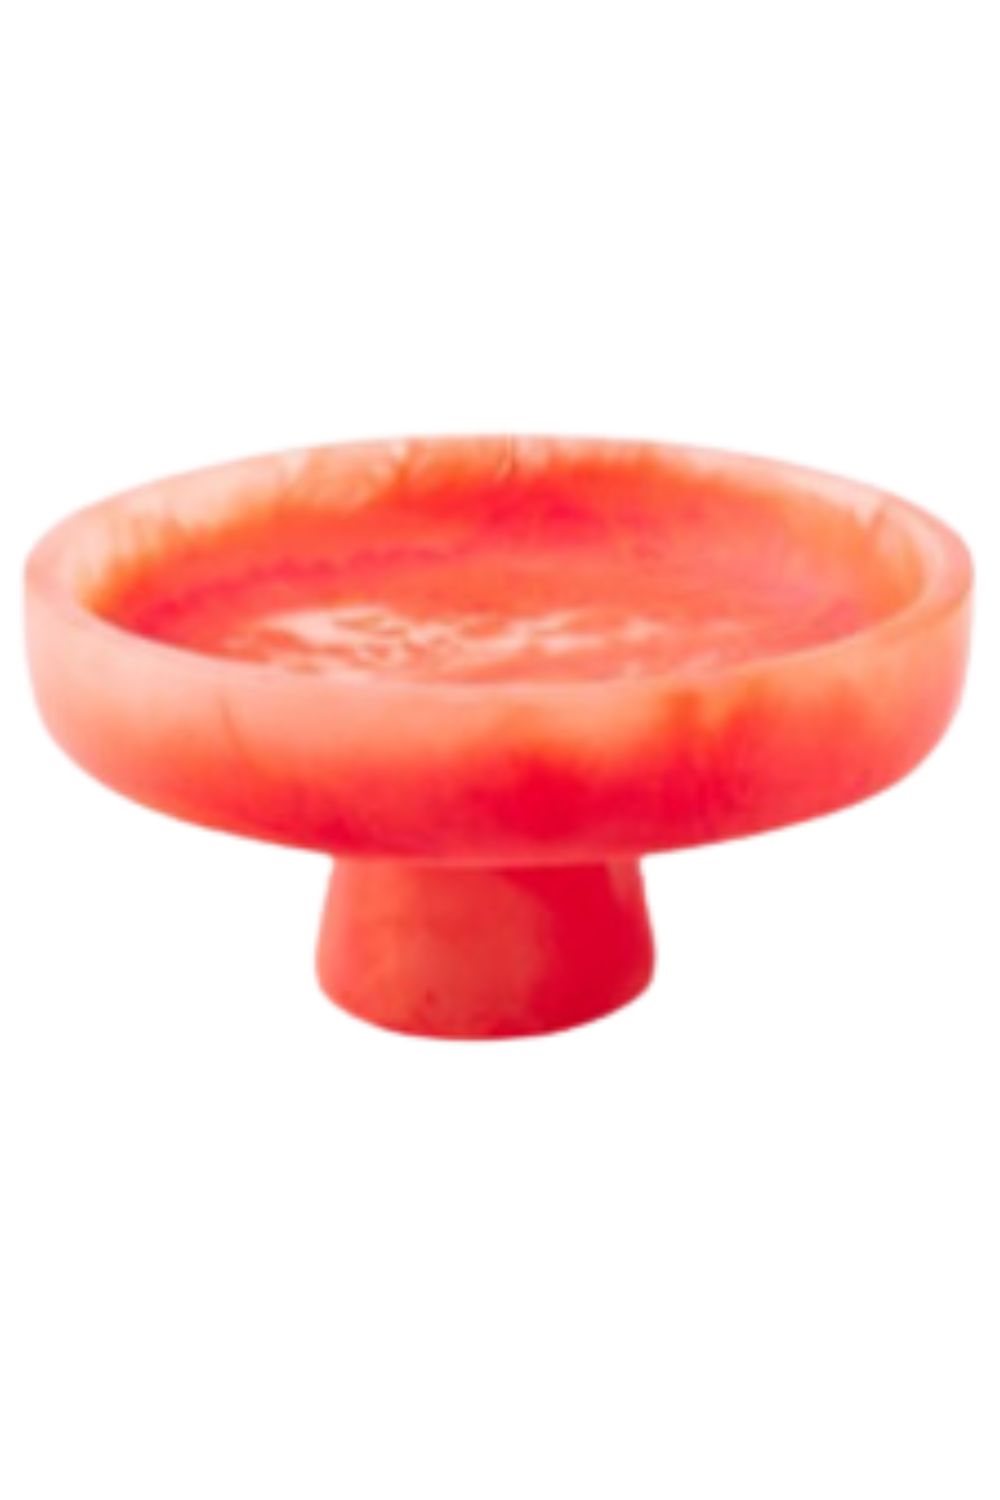 Pedestal Bowl - Large - Orange